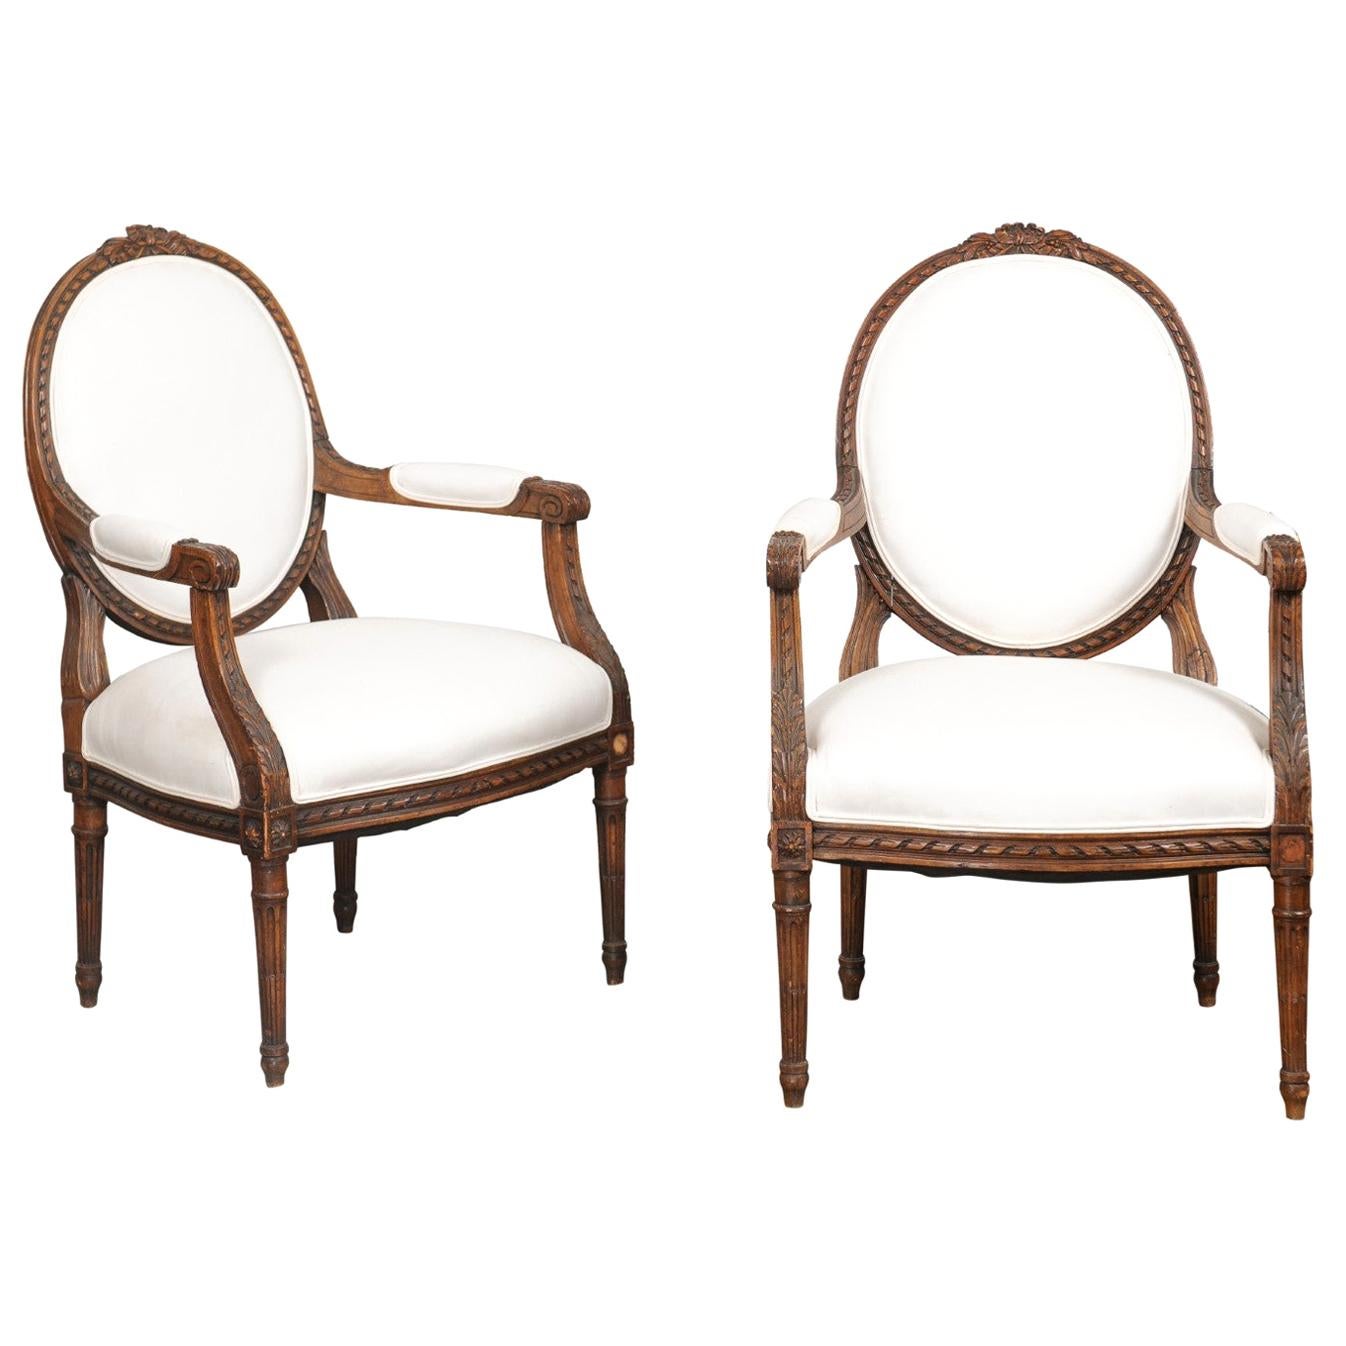 Paire de fauteuils à dossier ovale en noyer:: de style Louis XVI:: datant des années 1850